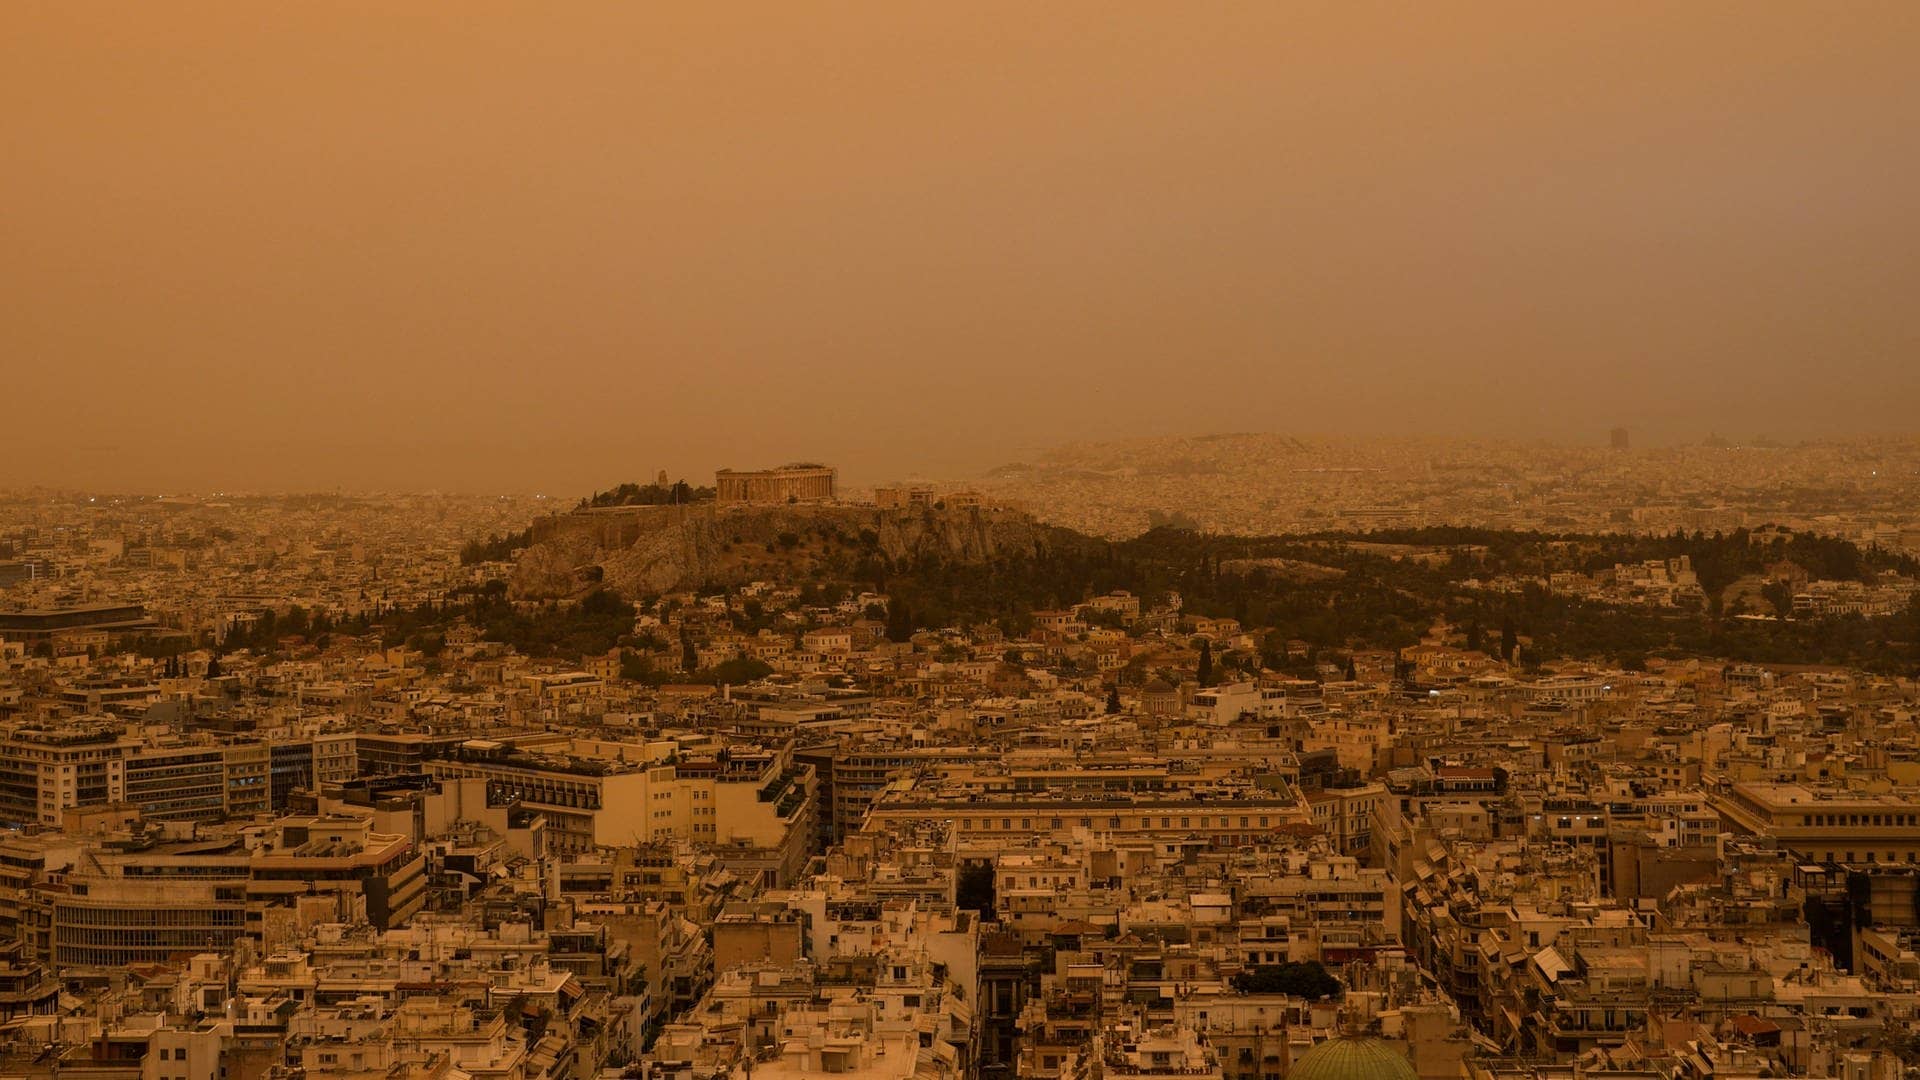 Der antike Akropolis-Hügel und die Stadt Athen vom Lykabettus-Hügel aus gesehen.